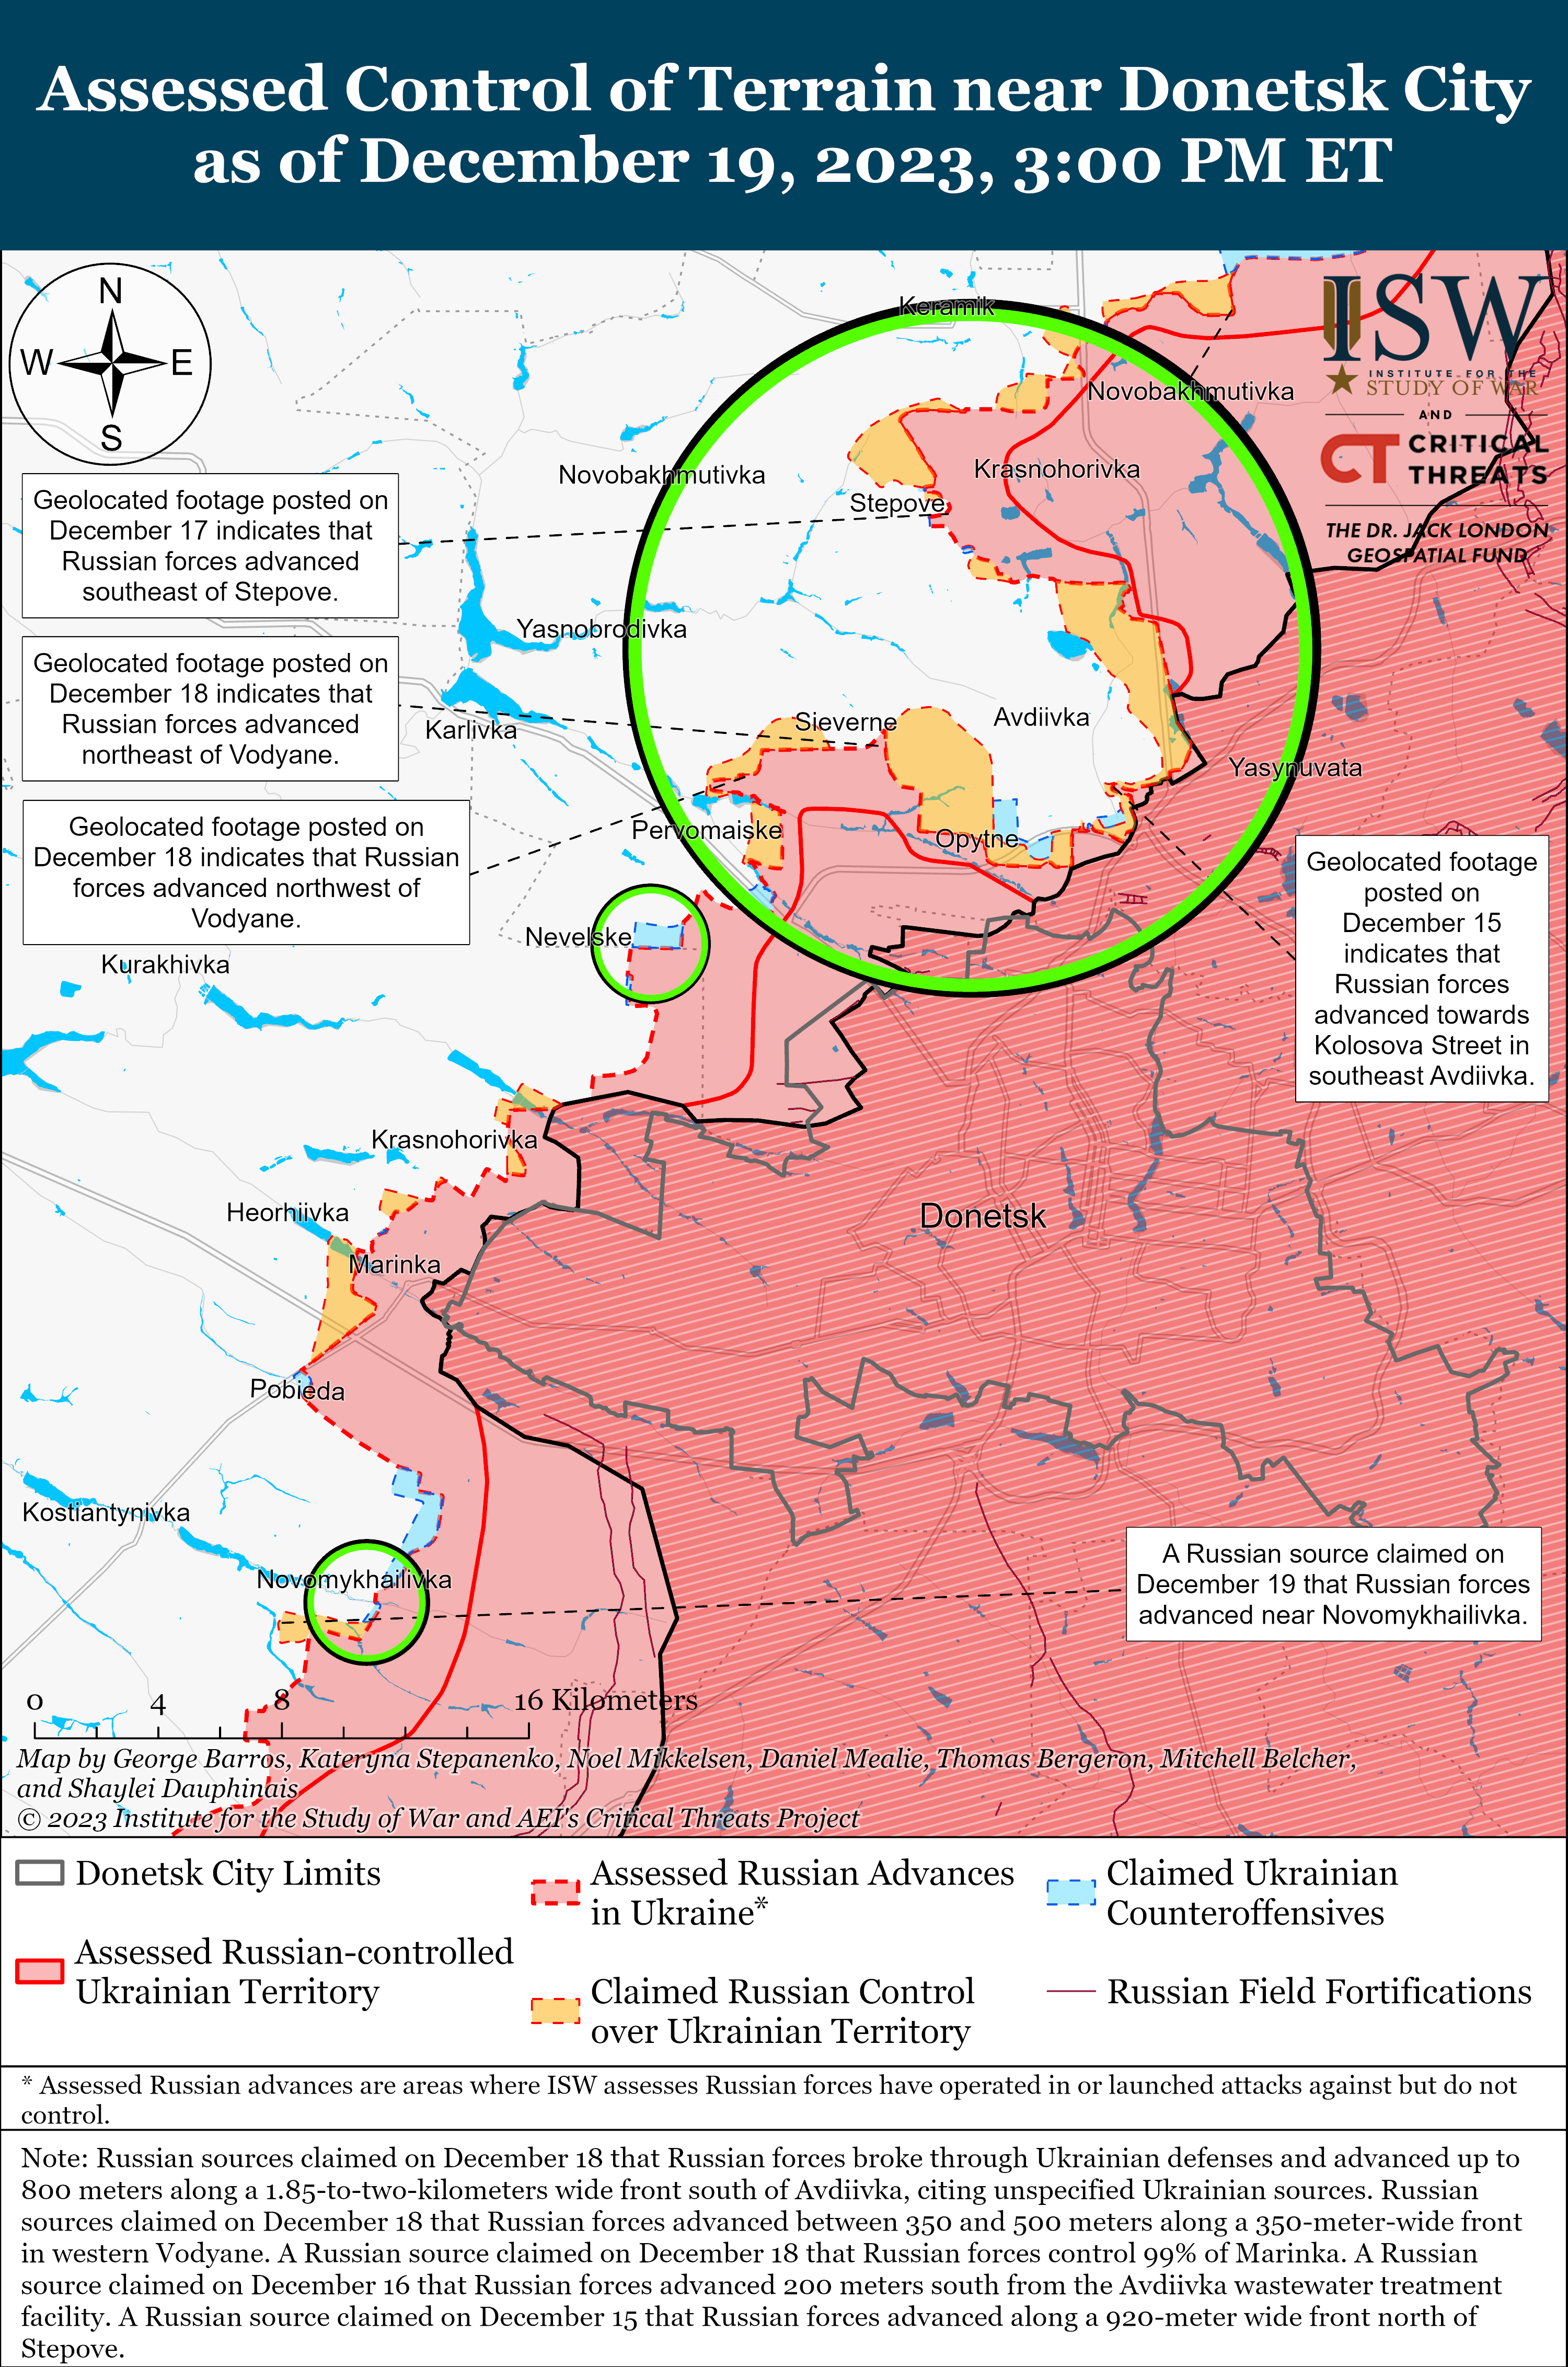 Украинские войска отразили атаки российских подразделений вблизи Авдеевки: карты ISW